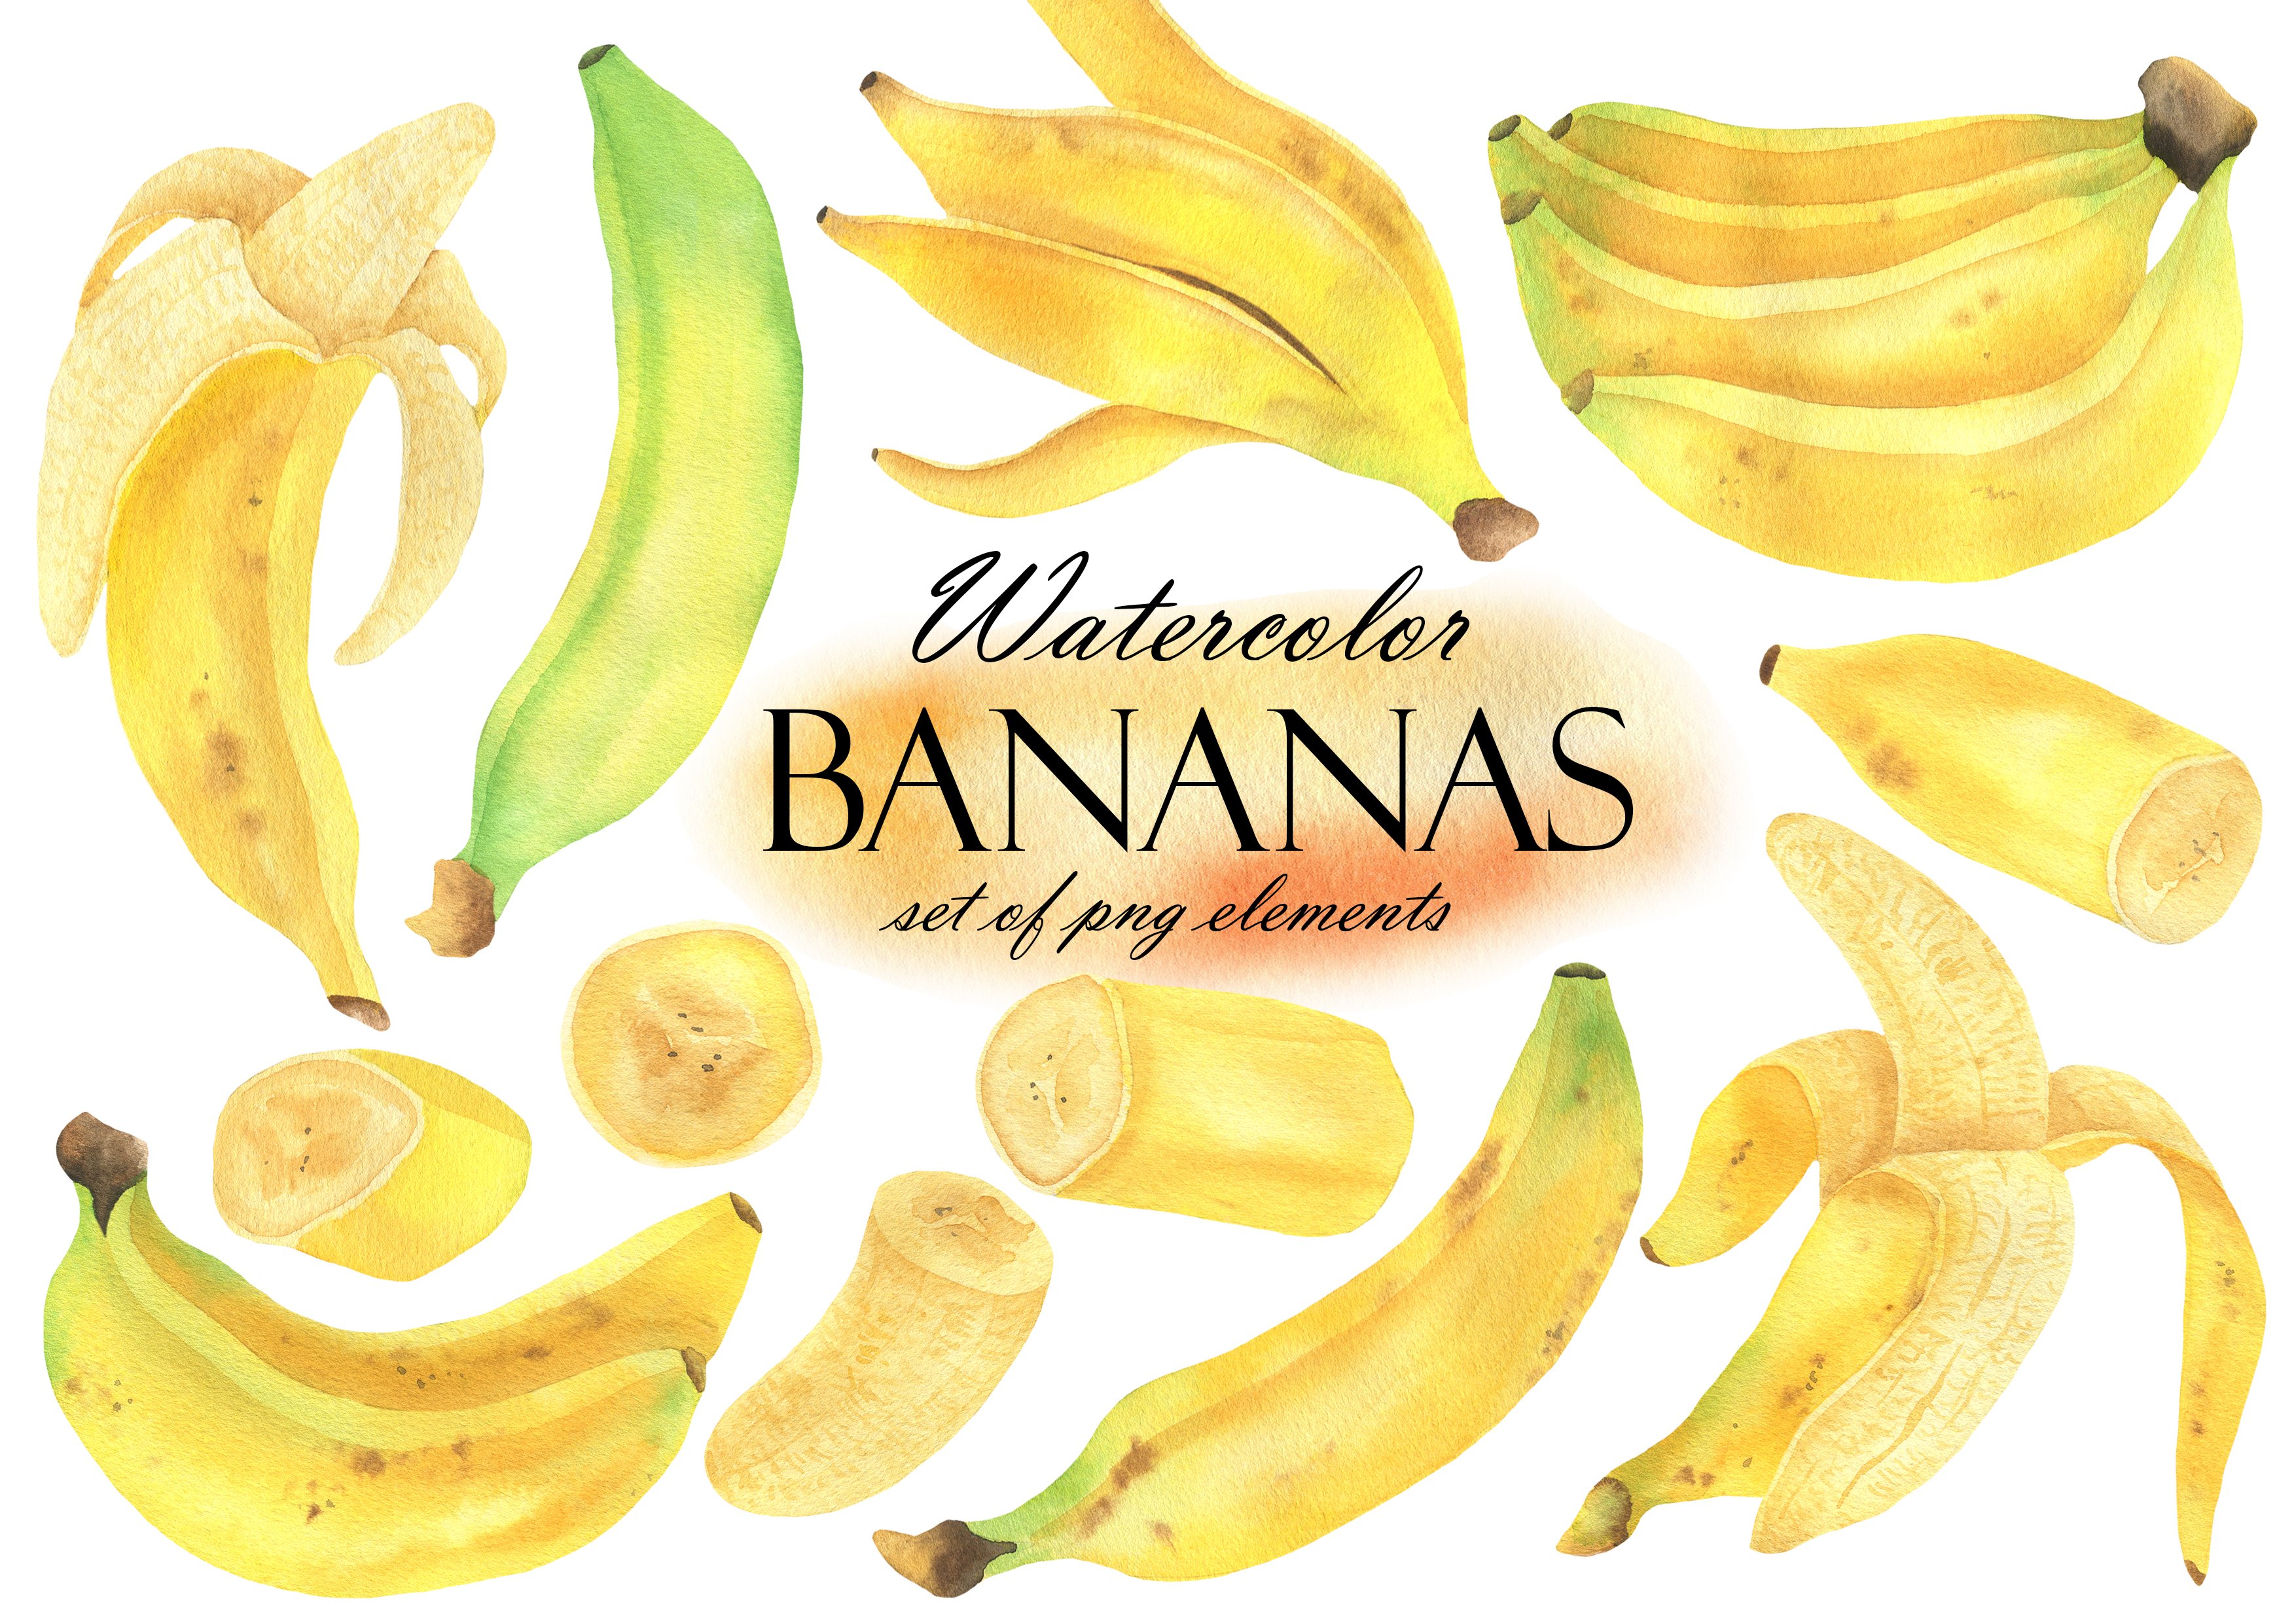 Watercolor Banana cover image.